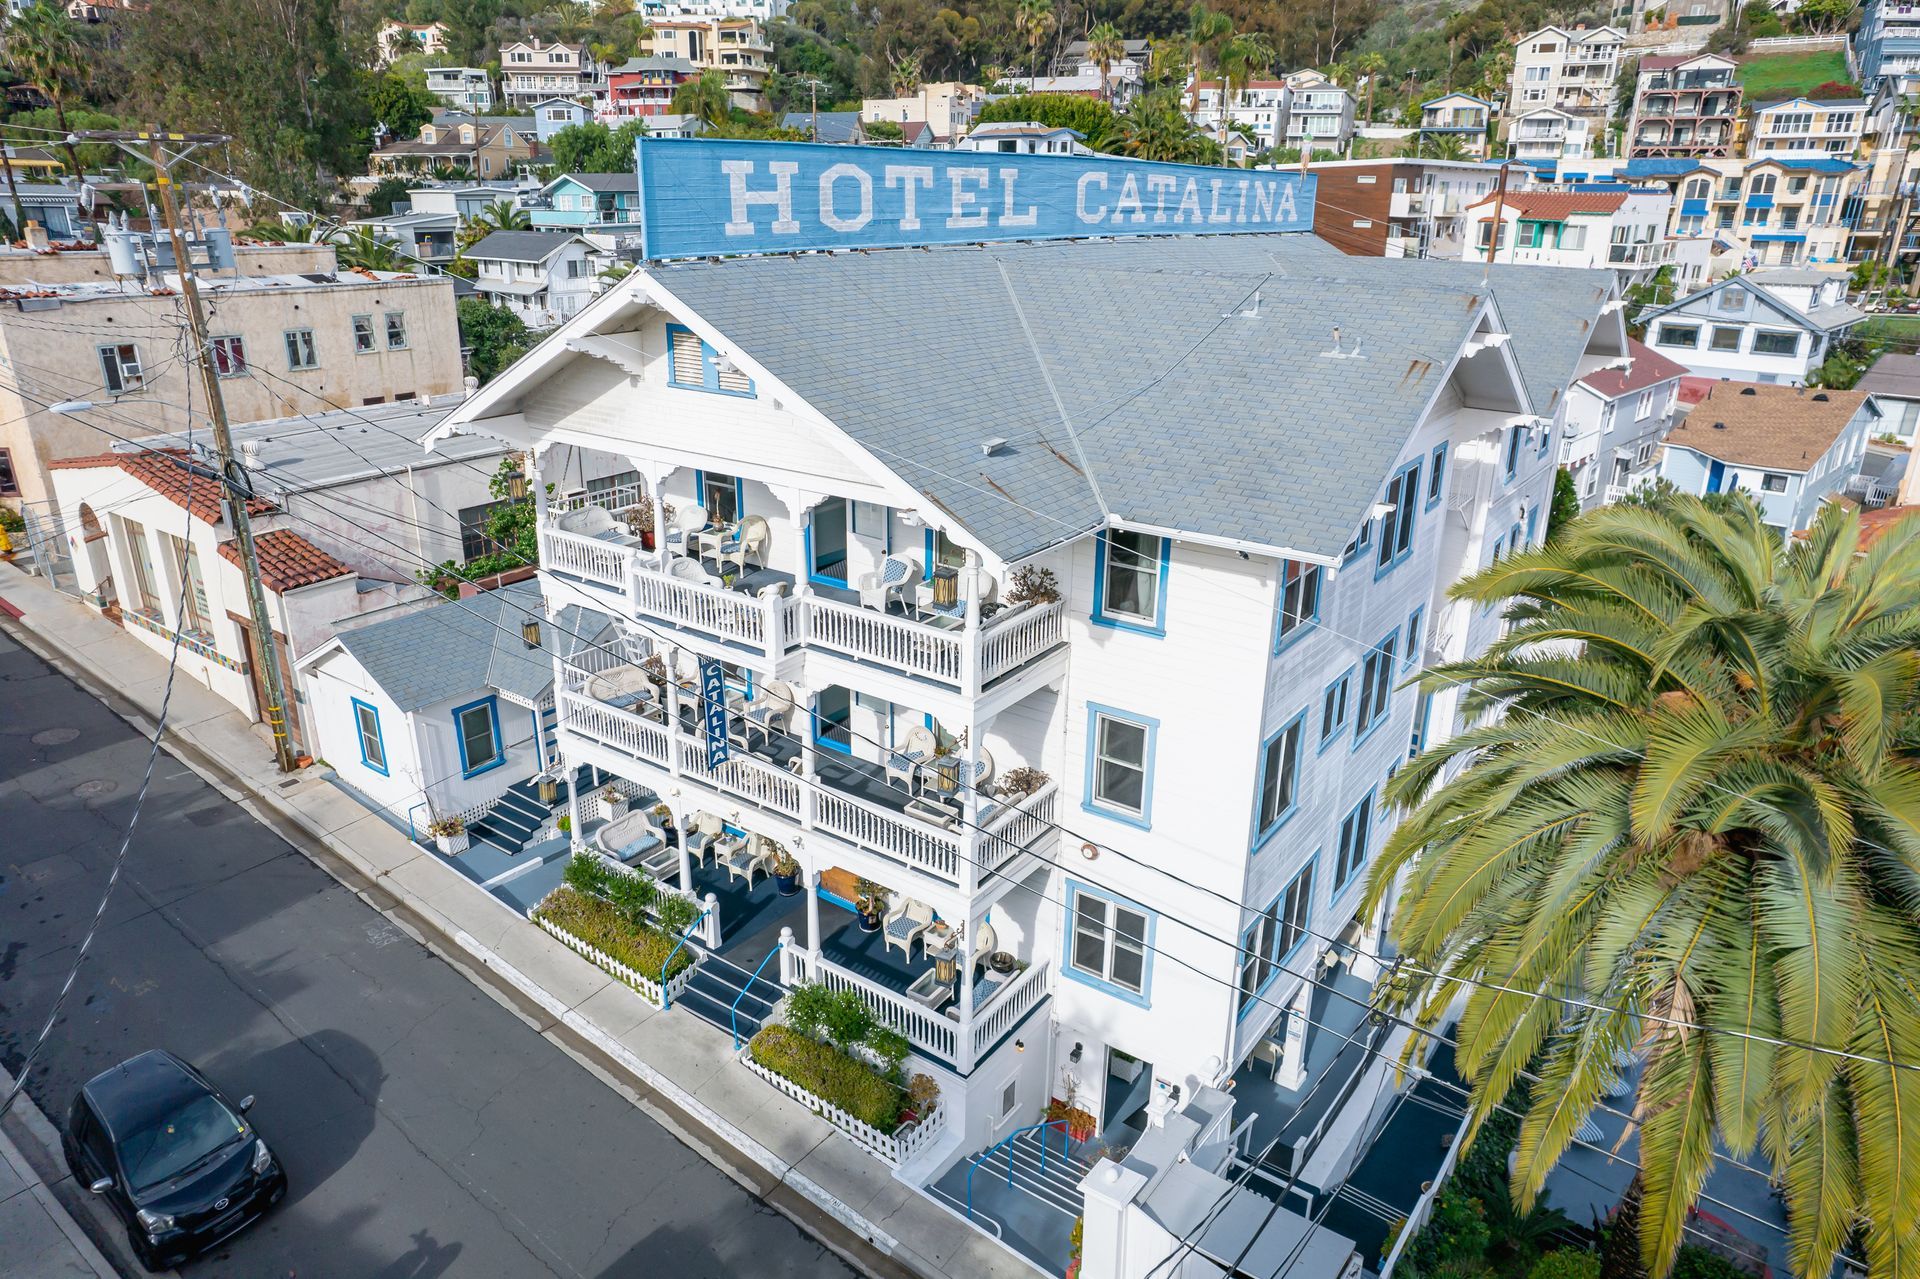 Your Luxe Getaway in Santa Catalina